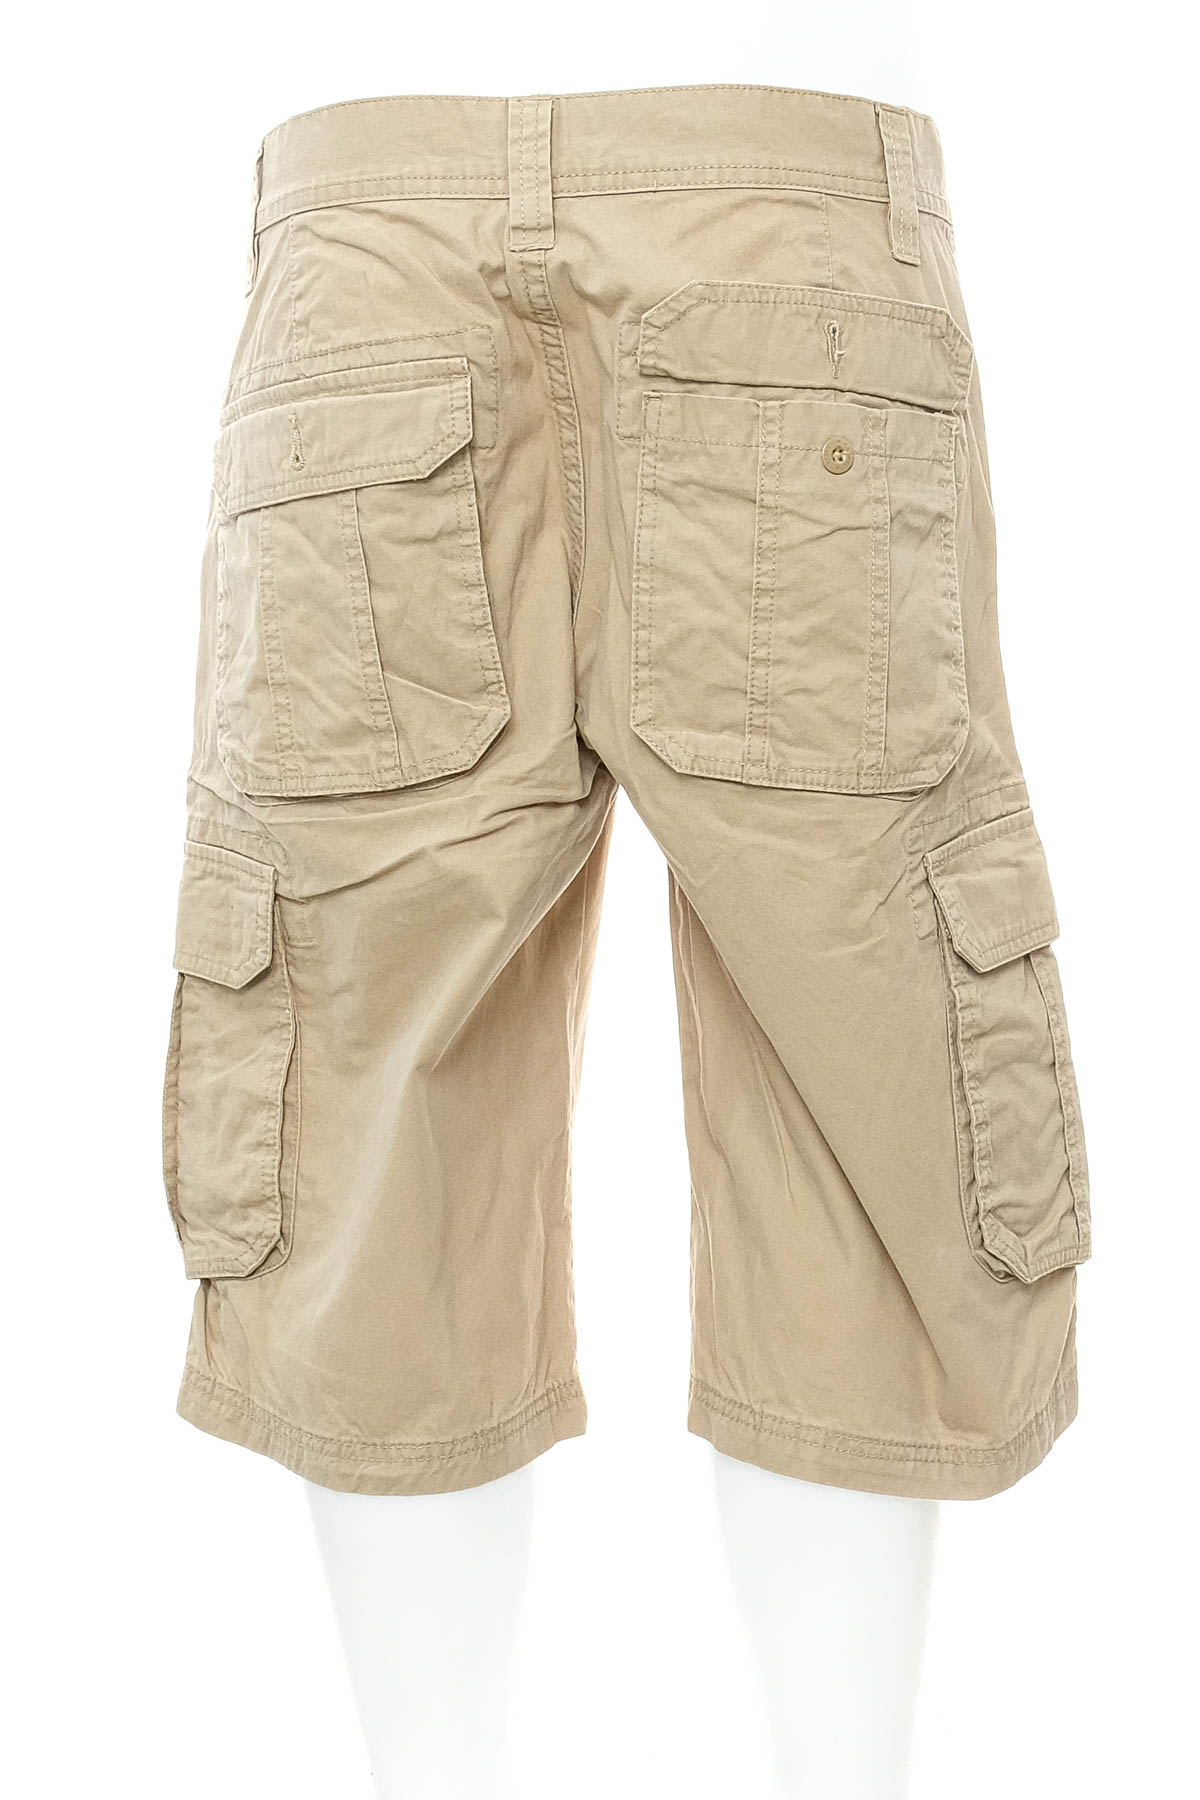 Men's shorts - Watsons - 1